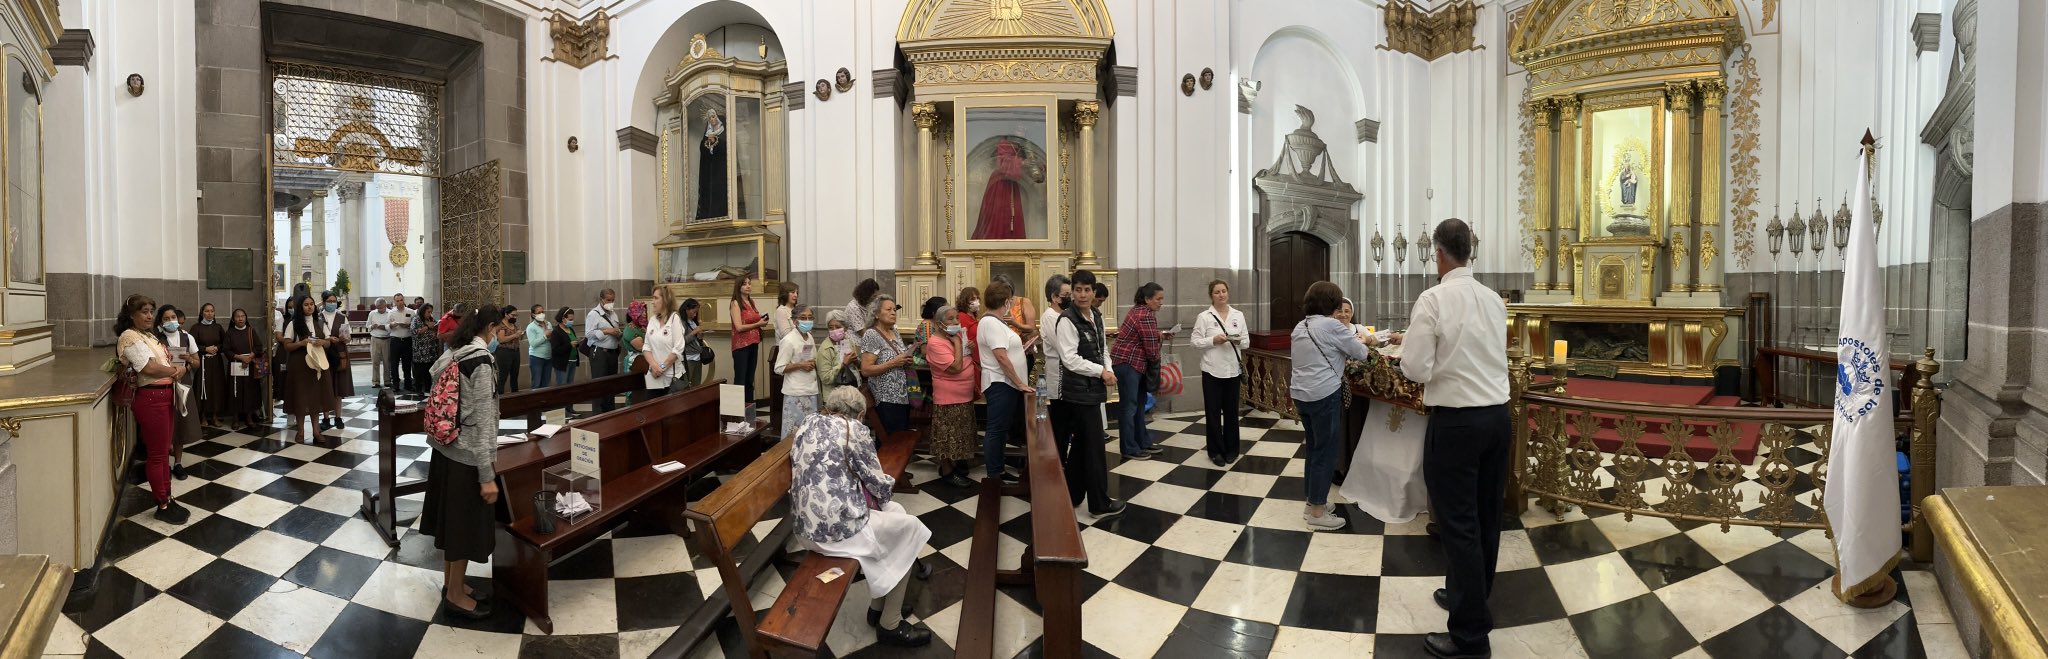 Reliquia de San Juan Pablo II es venerada en Guatemala